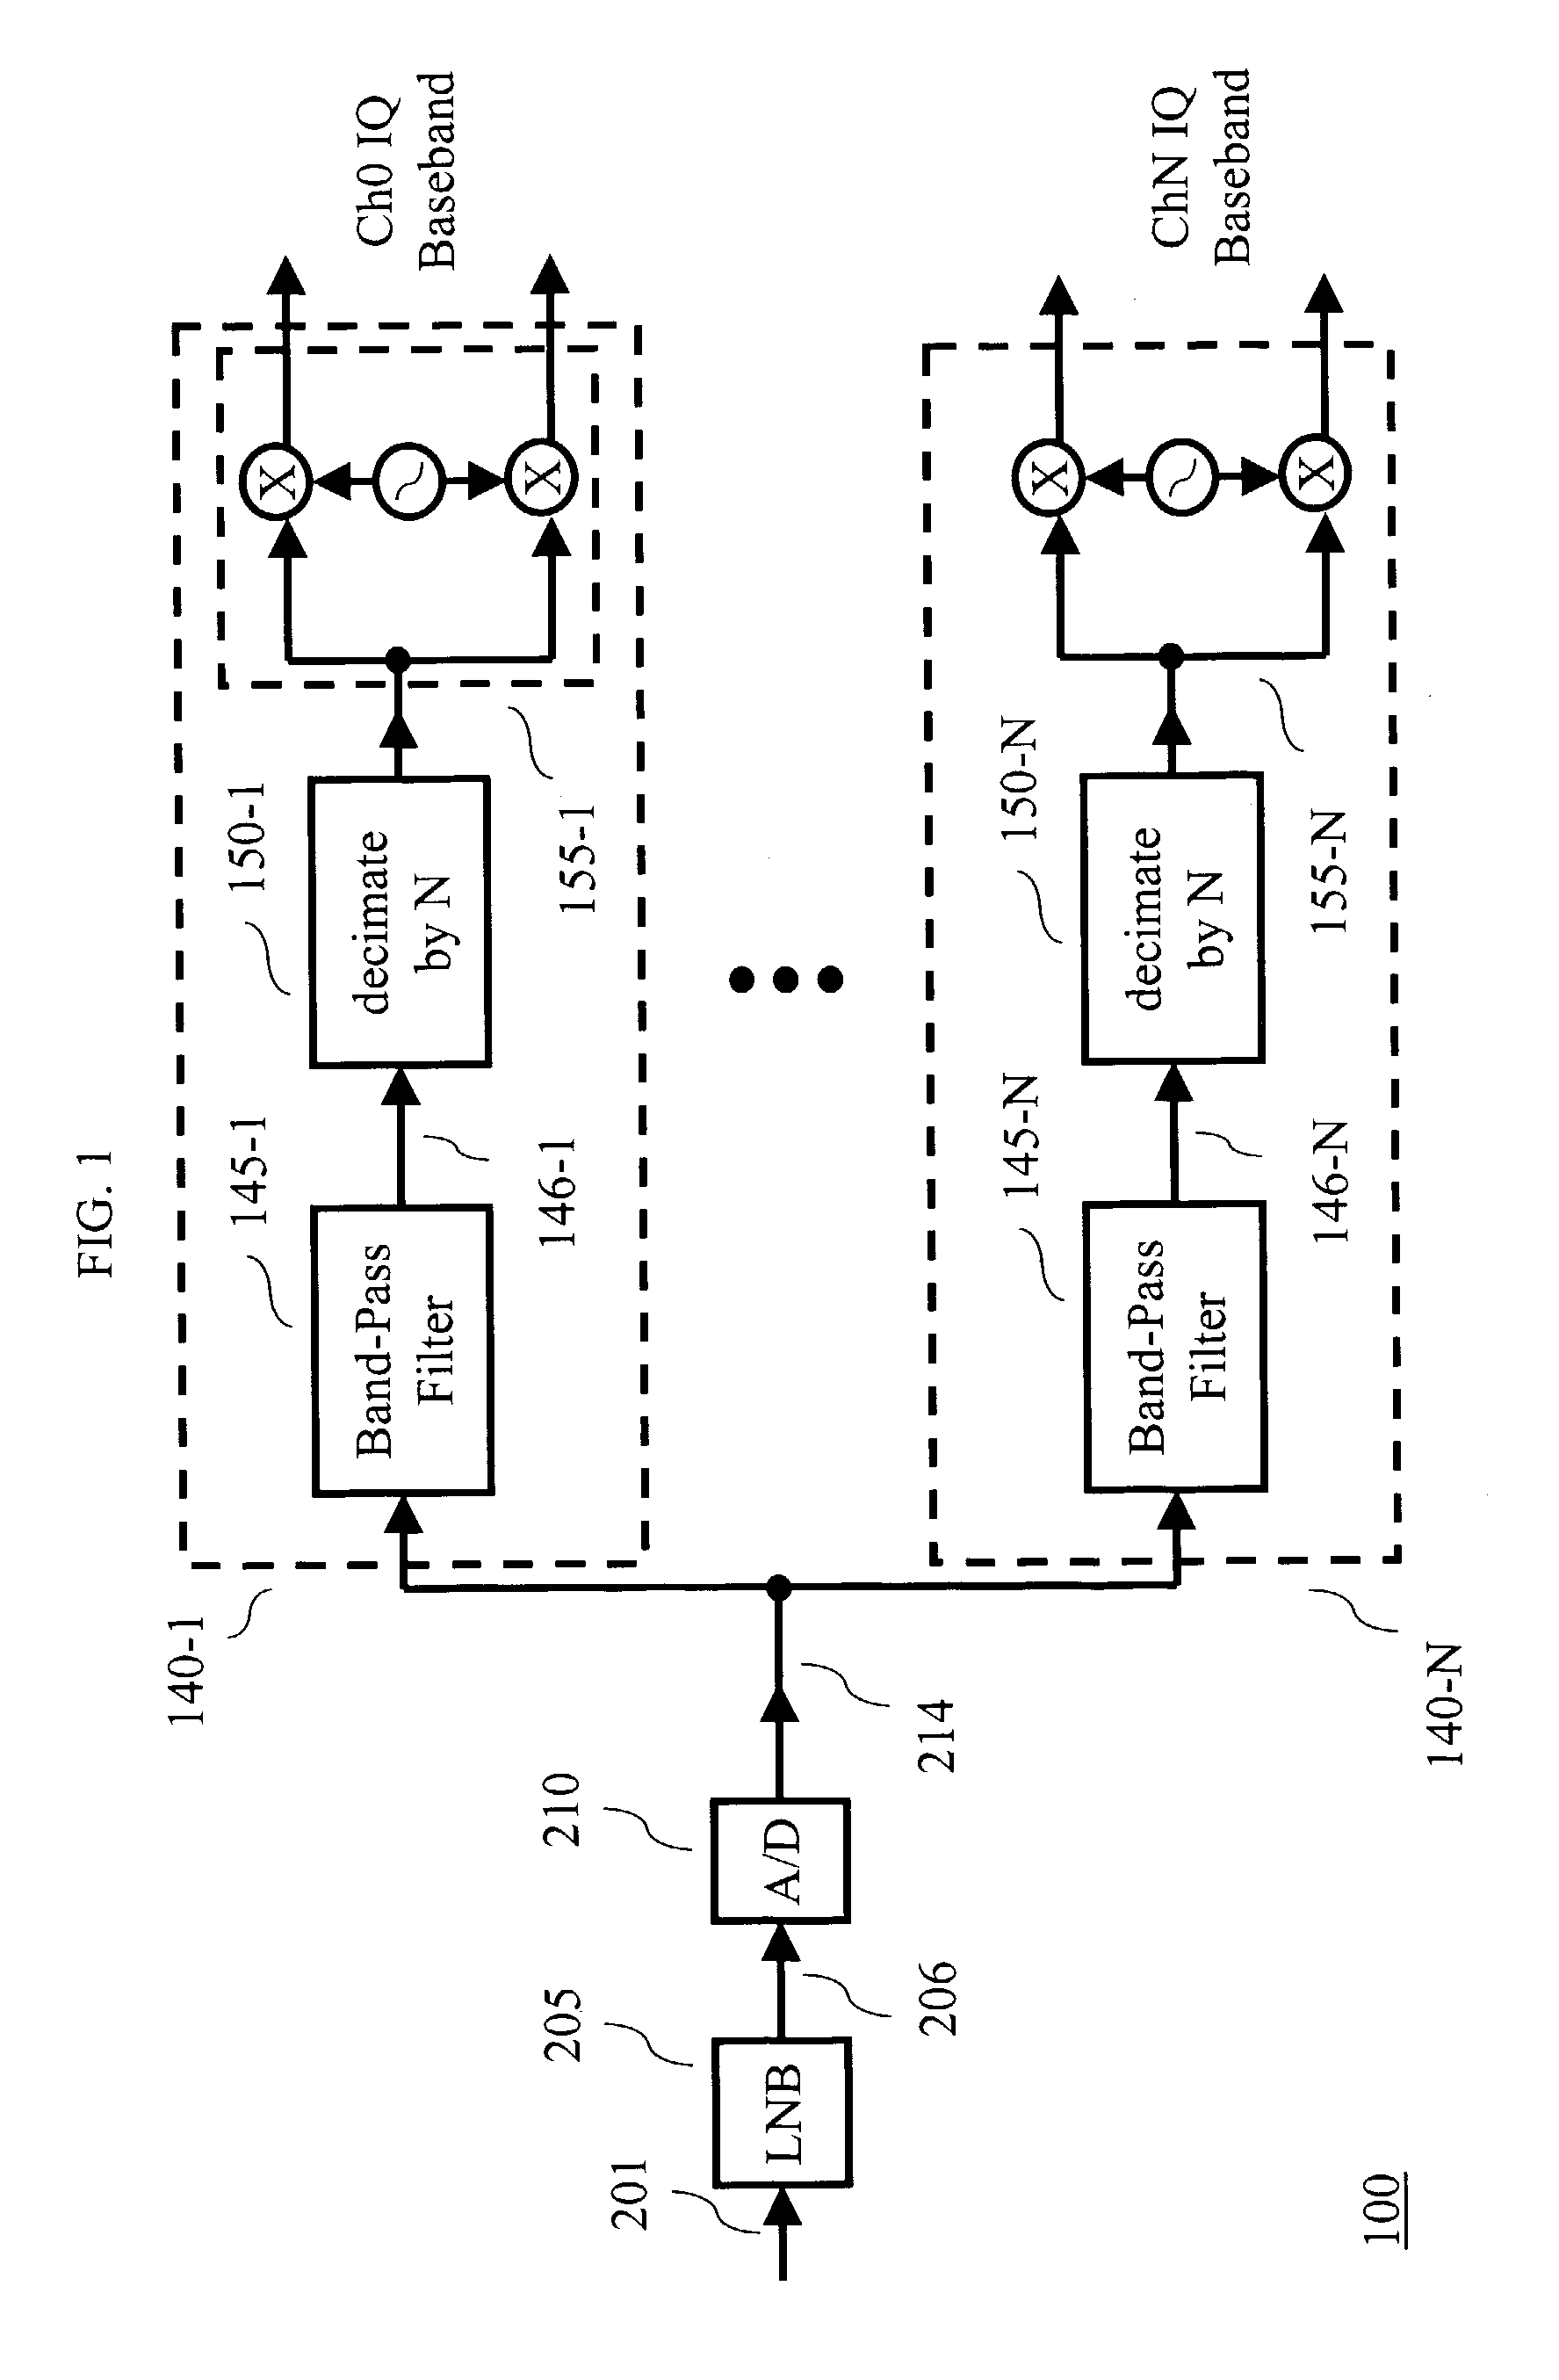 Multi-channel tuner using a discrete cosine transform